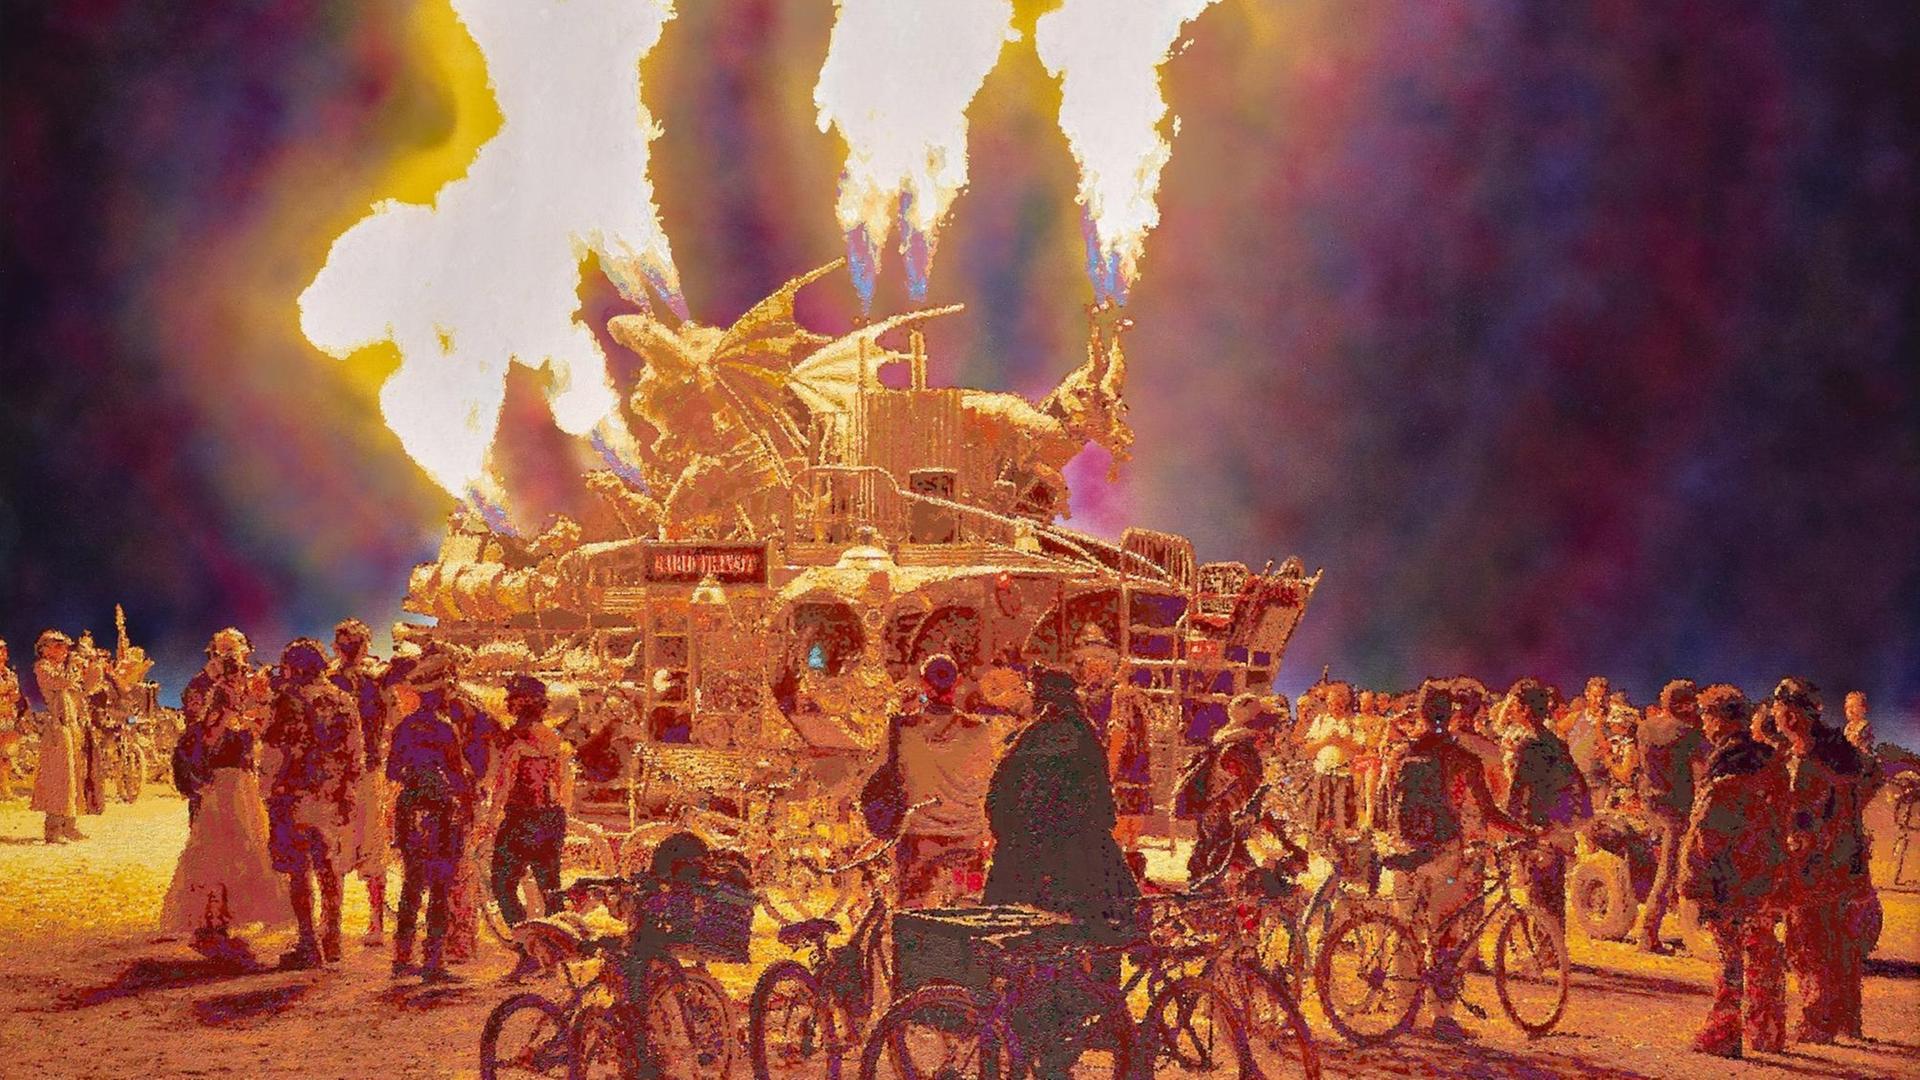 Um eine riesige fahrbare Skulptur mit Tierfiguren, die Feuer in den Nachthimmel speien, stehen Besucher des Burning Man Festival in der Wüste Nevadas .